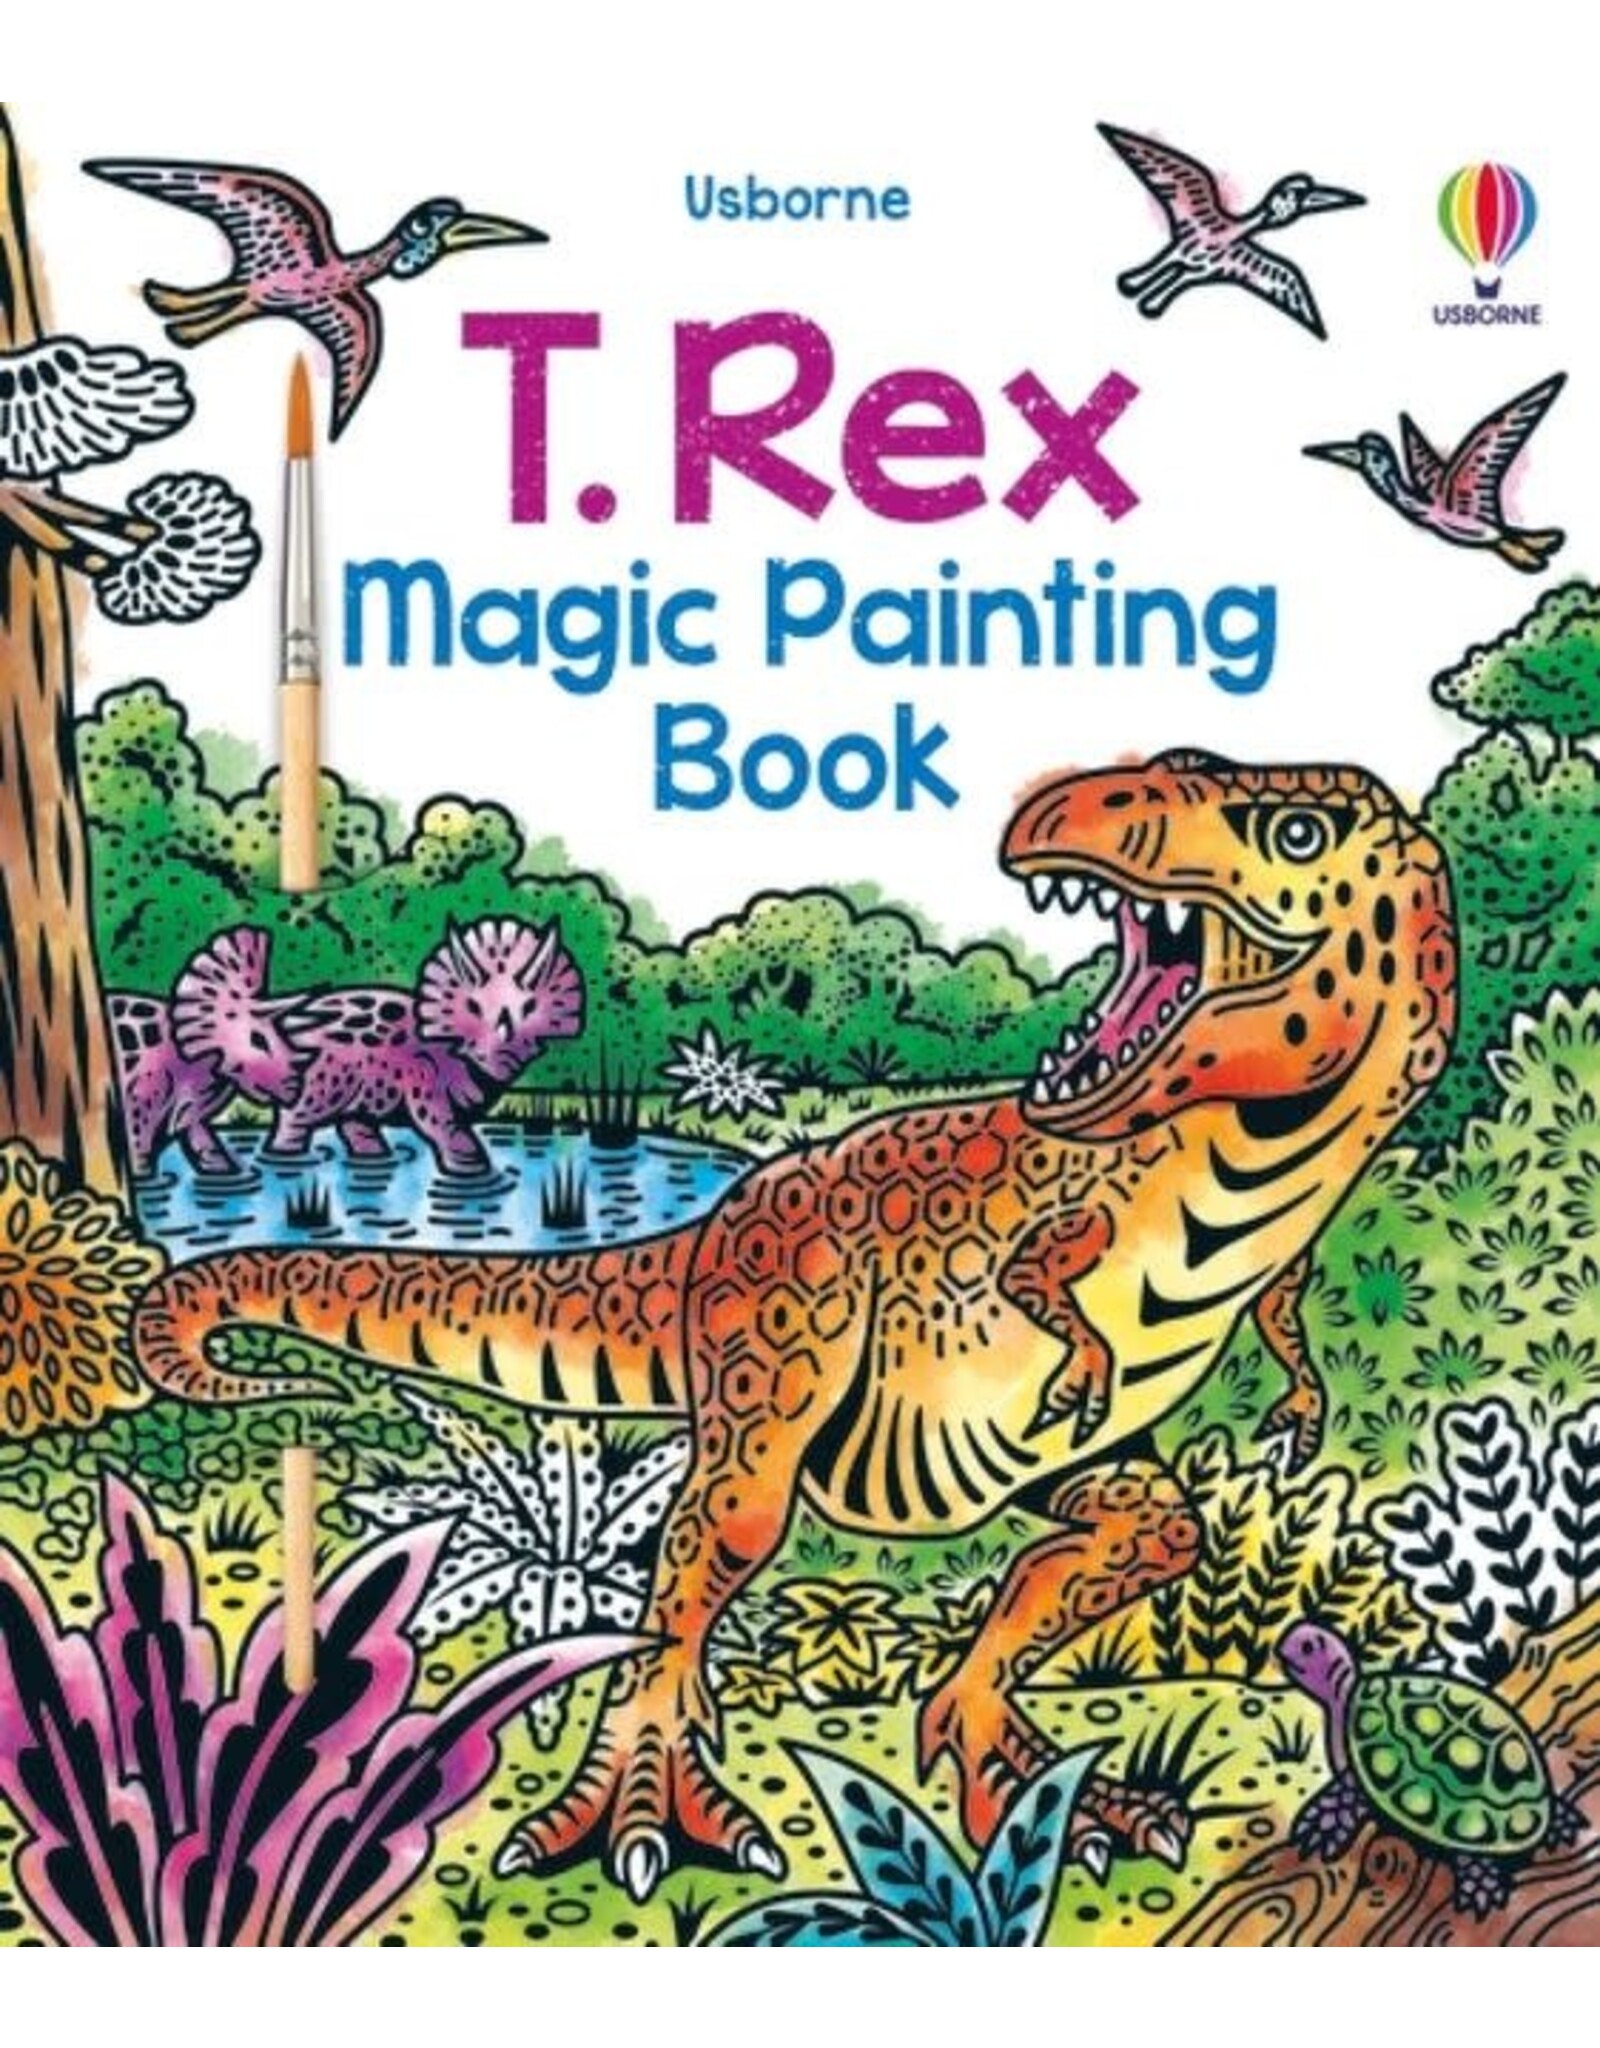 Usborne T. Rex Magic Painting Book